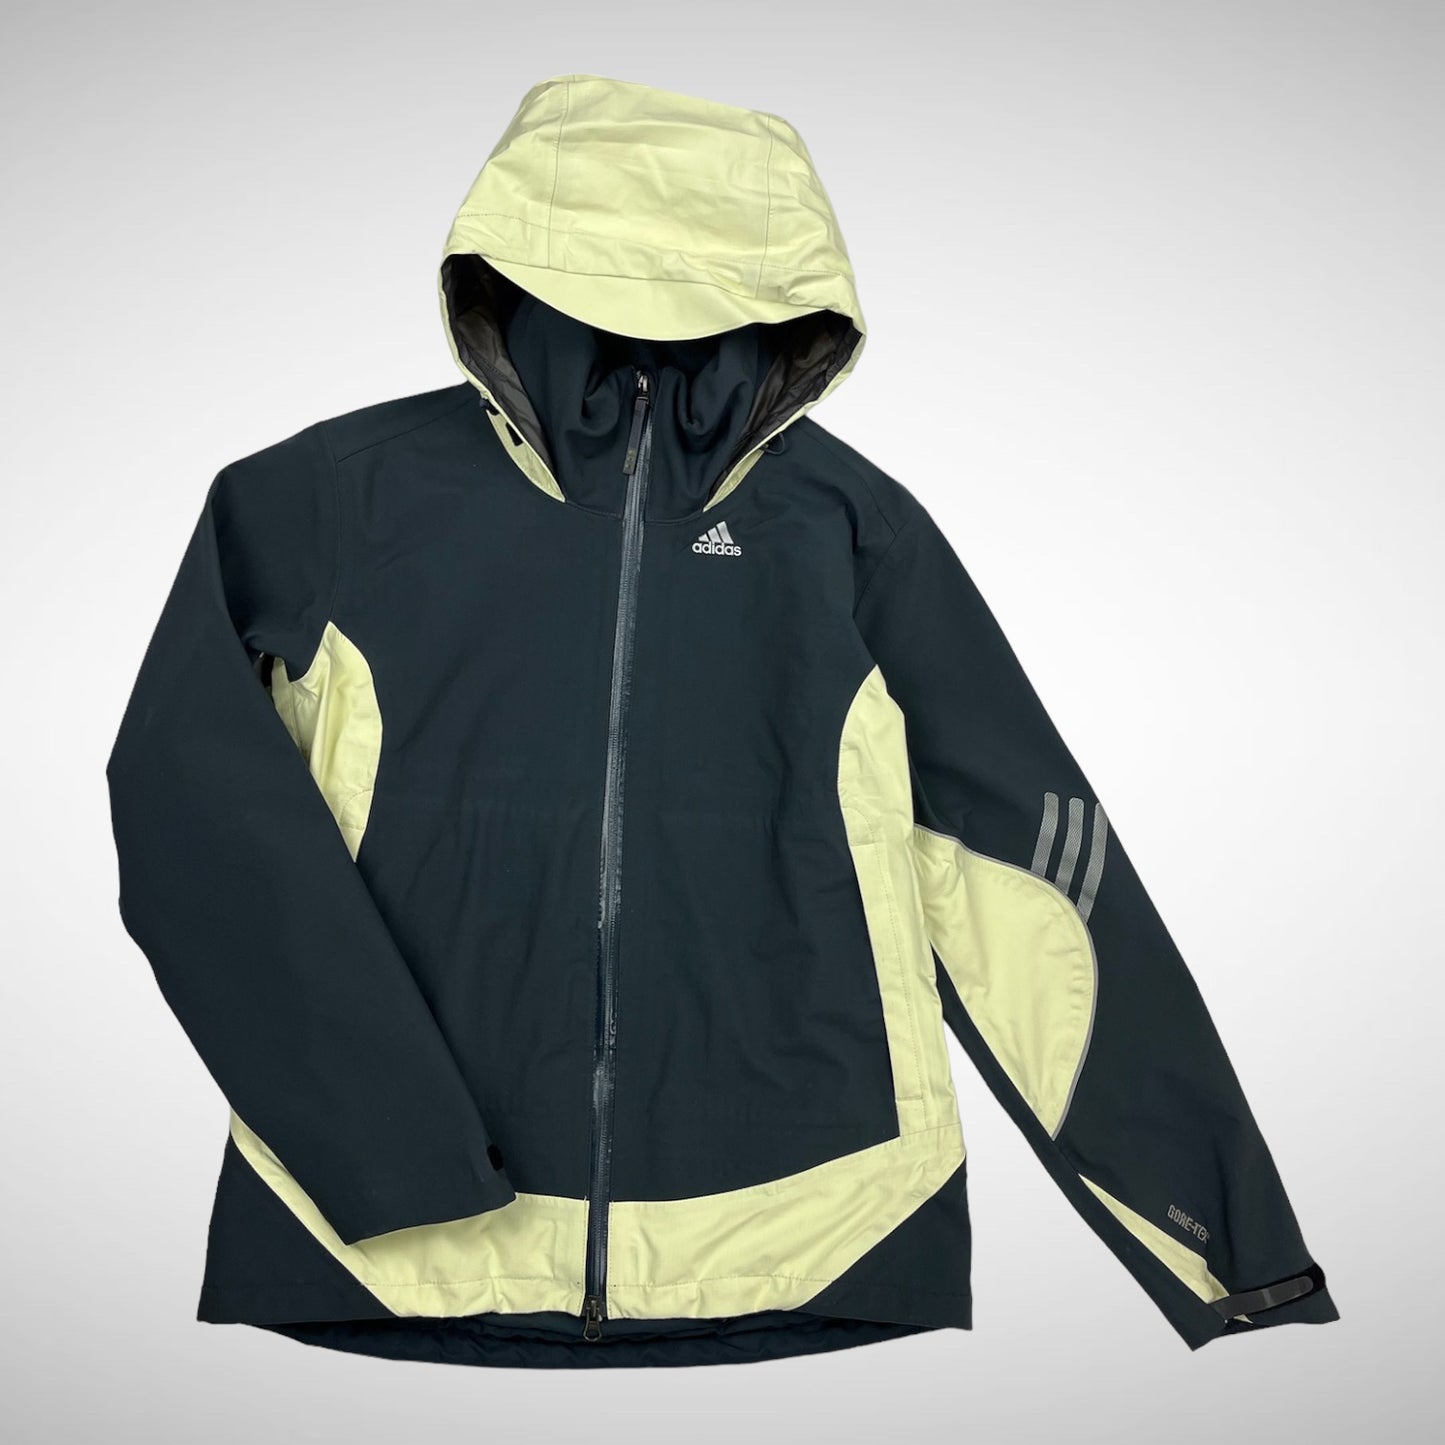 Adidas Summit Sample Jacket (2000s)